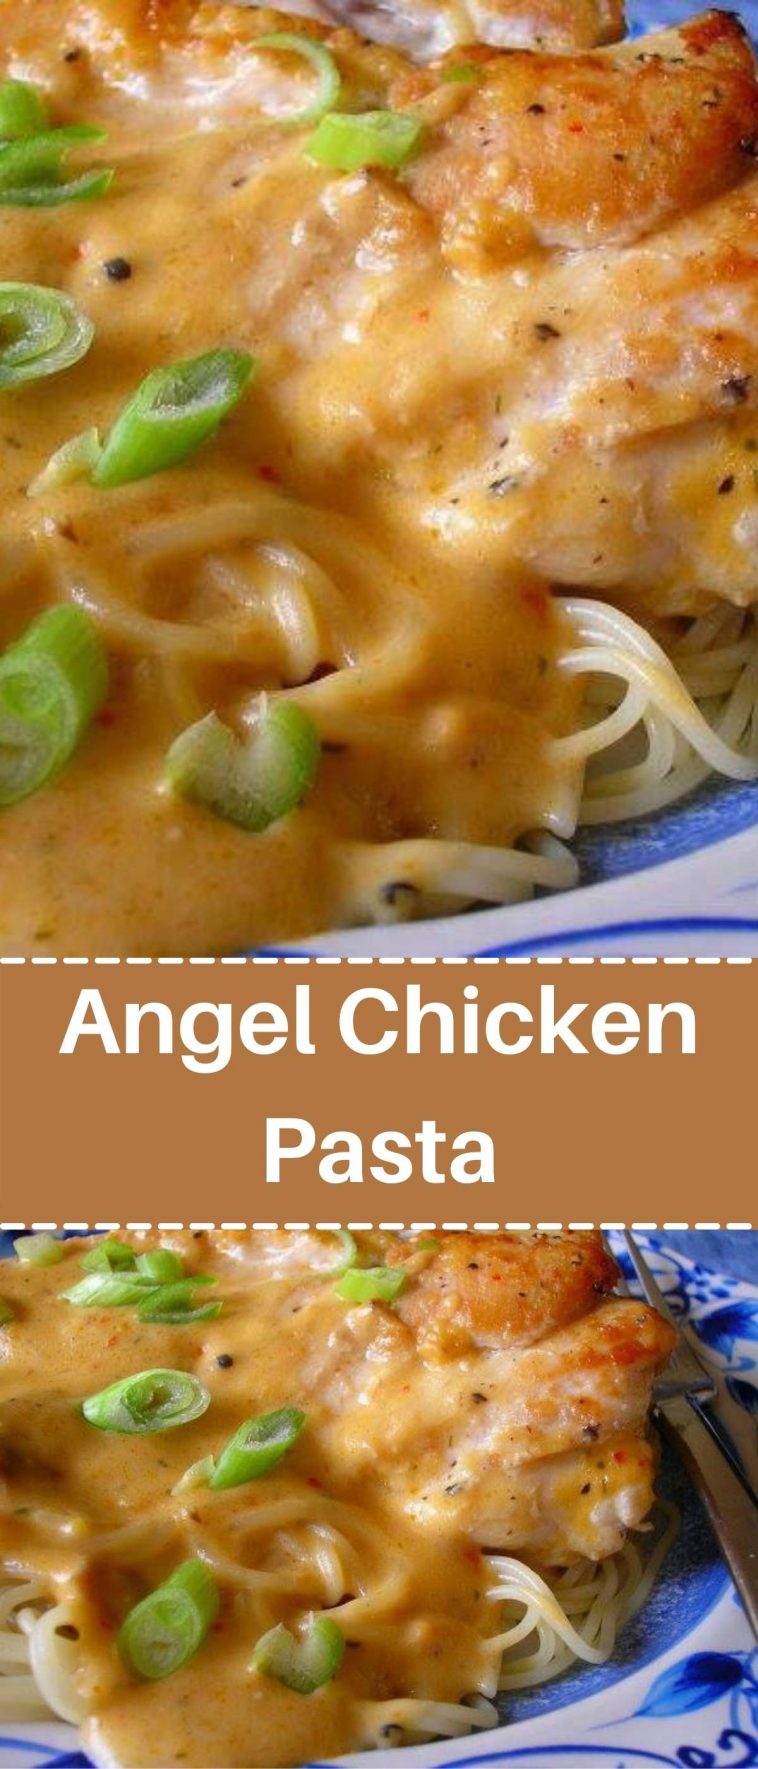 Angel Chicken Pasta